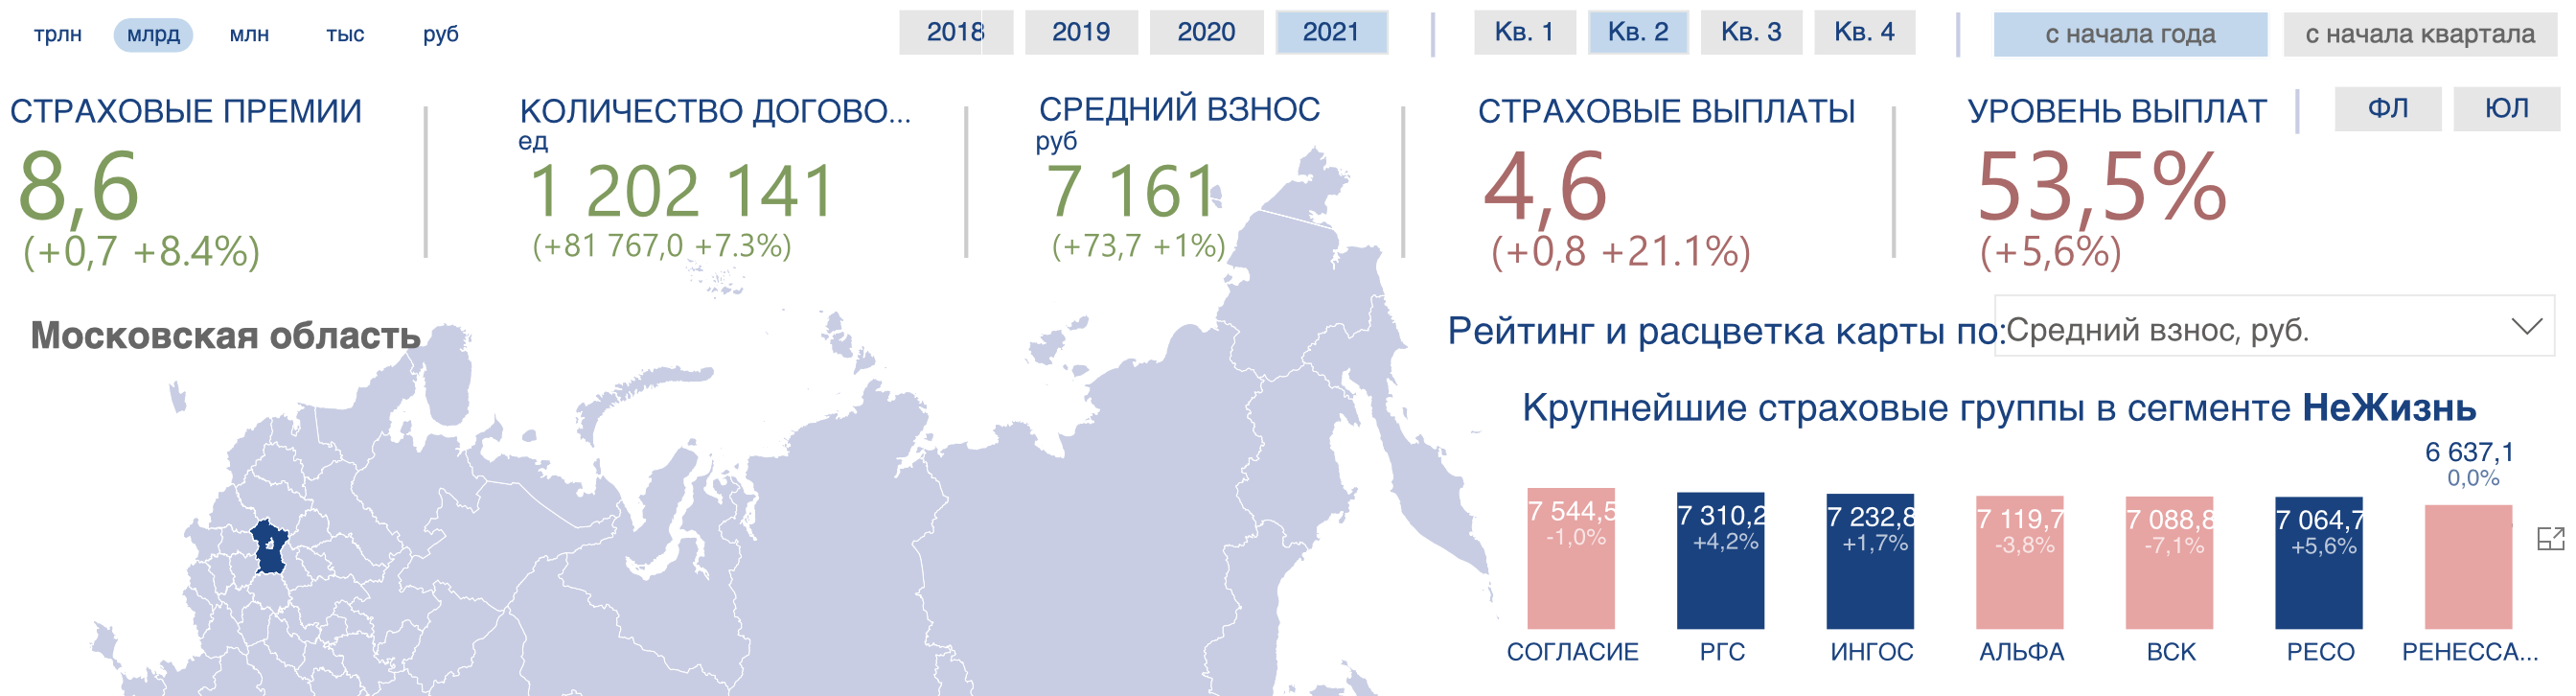 Средняя стоимость ОСАГО в Московской области 1 полугодие 2021 года